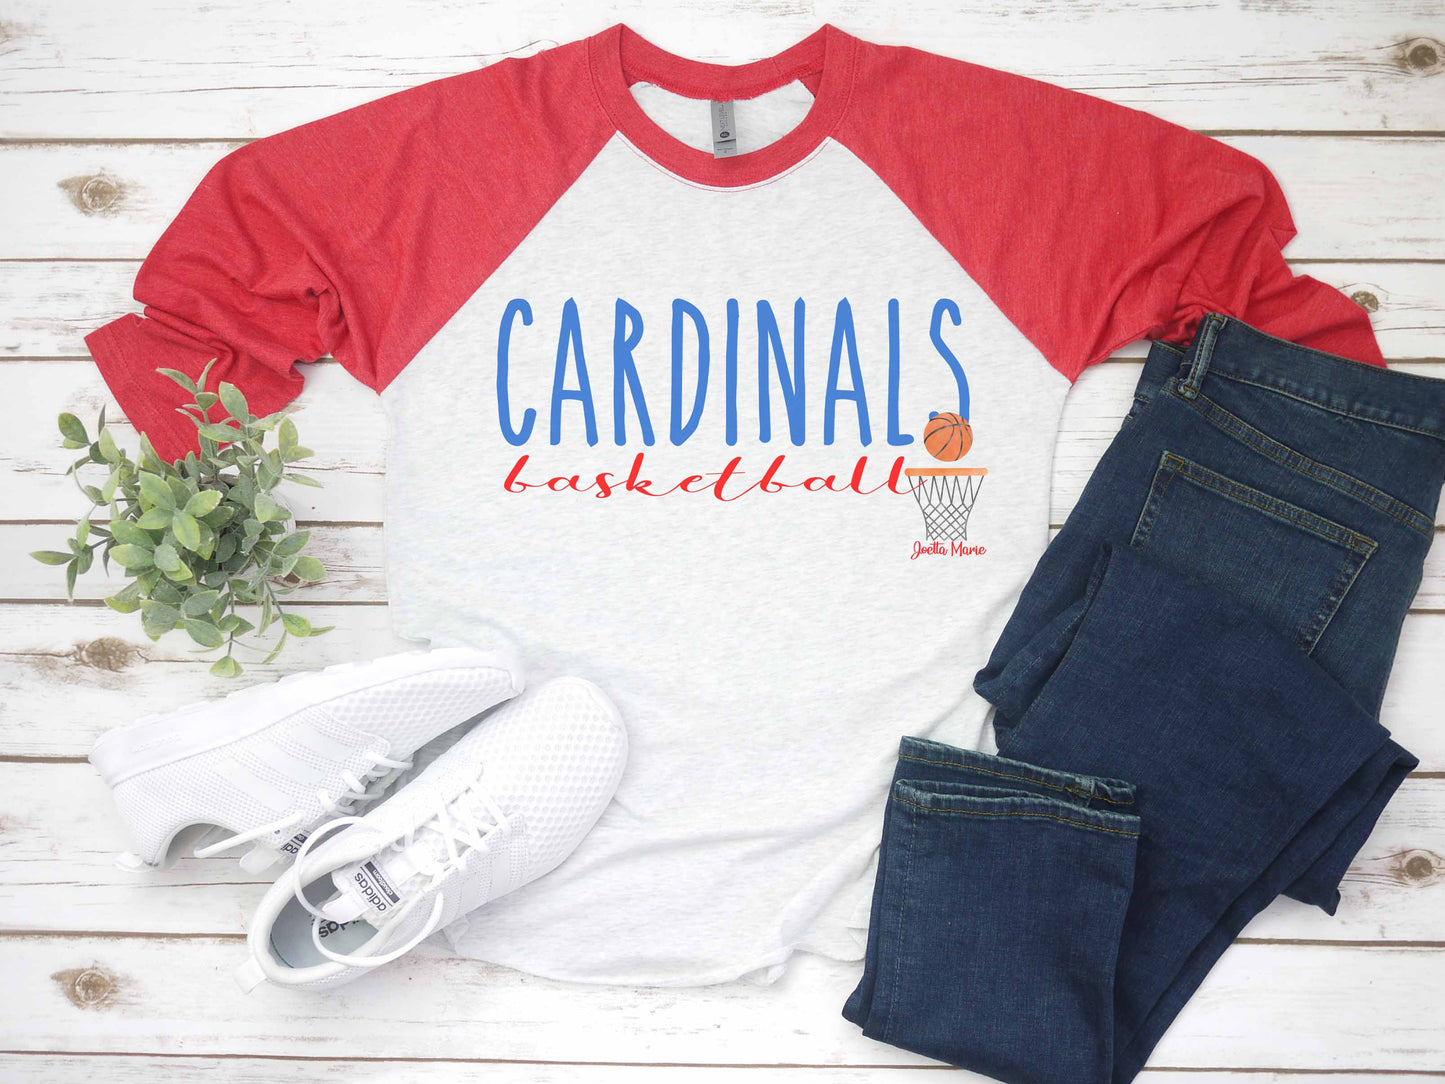 Cardinals basketball 3/4 raglan